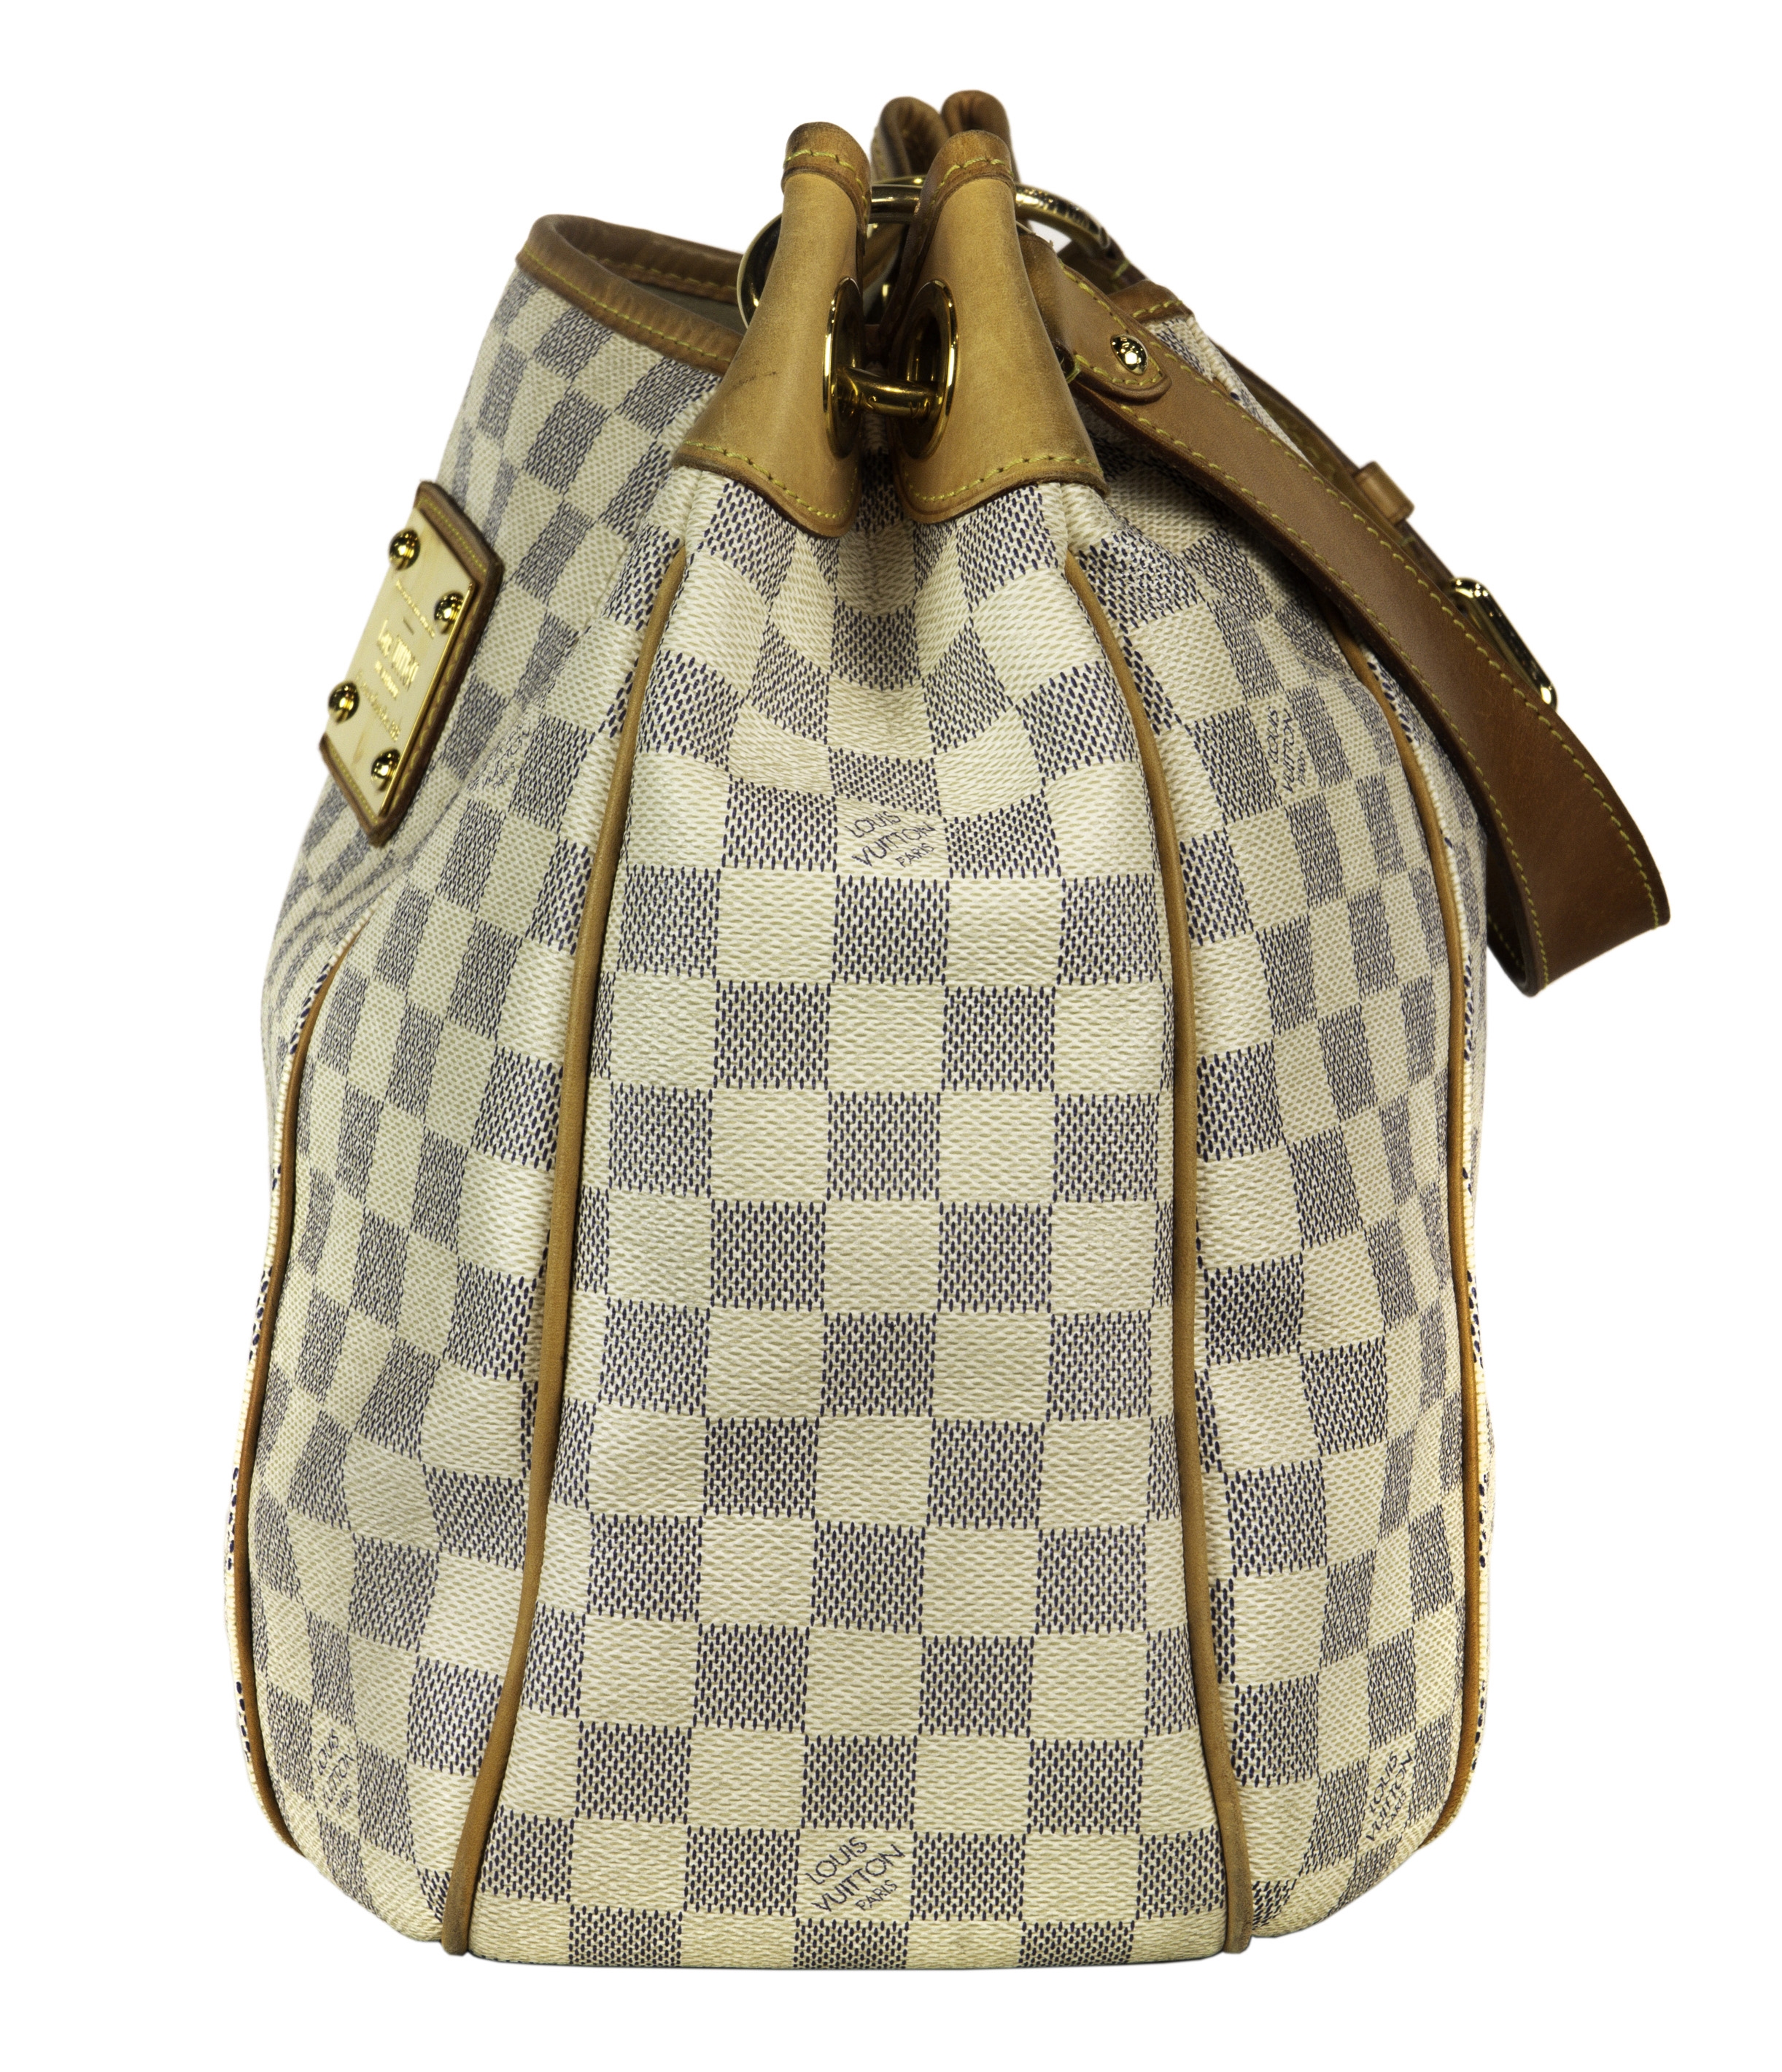 Louis Vuitton Galliera PM Damier Azur Shoulder Bag